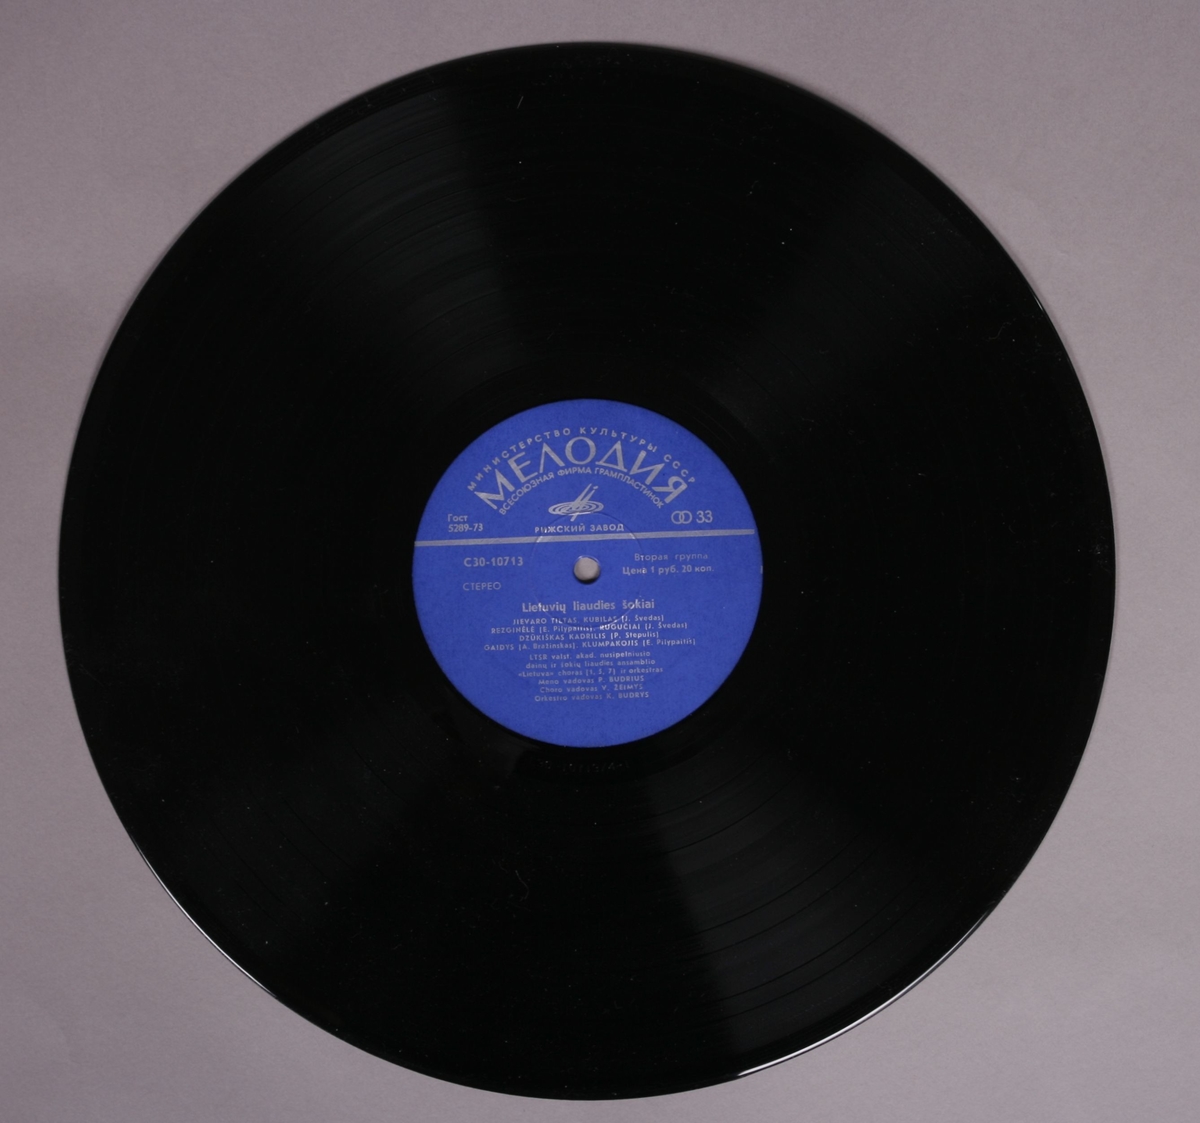 Grammofonplate i svart vinyl og plateomslag i papp. Platen ligger i en plastlomme.